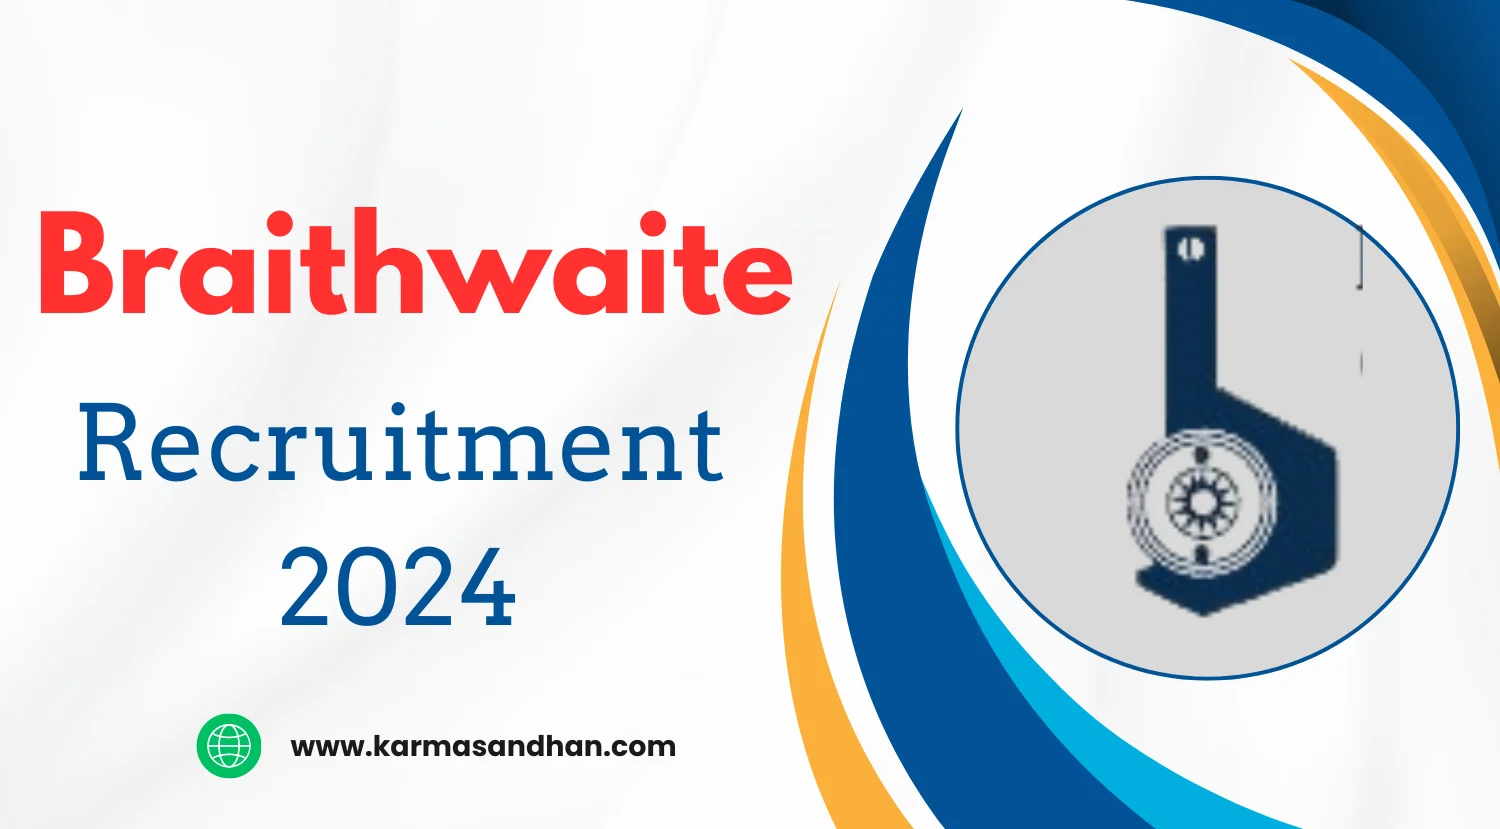 Braithwaite Engineer Recruitment 2024